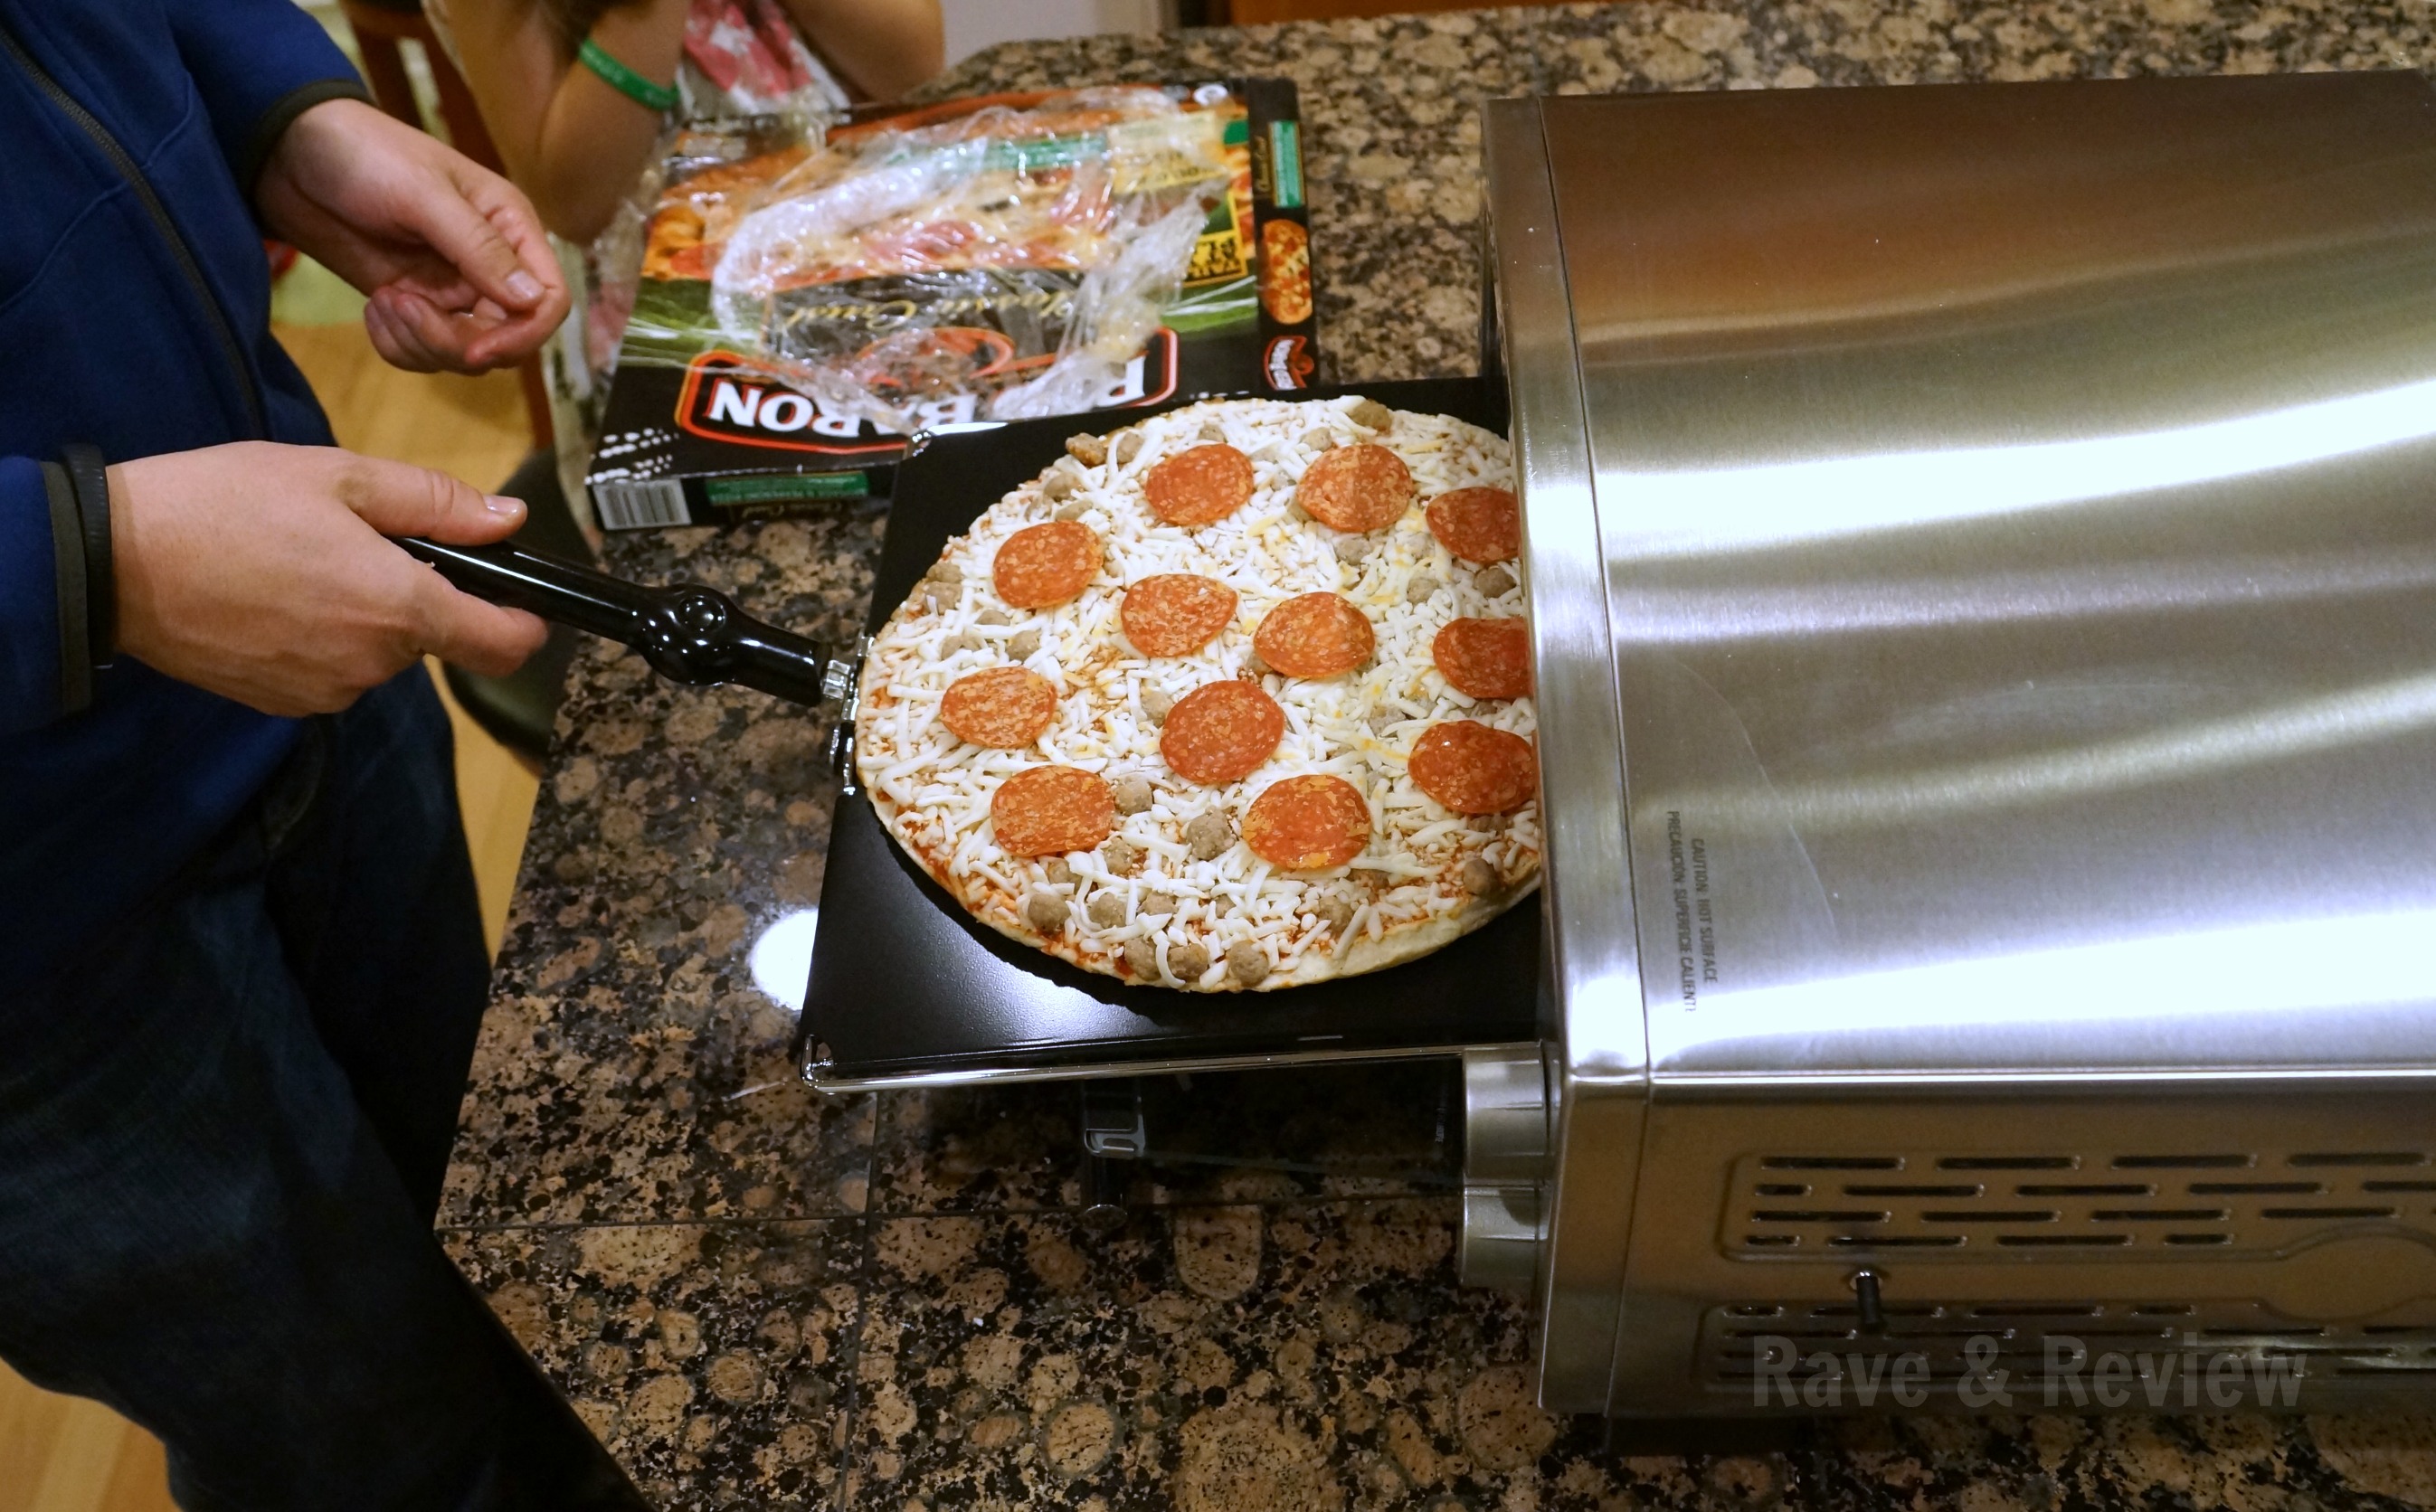 Black + Decker 5 Minute Pizza Oven & Snack Maker - Redhead Mom